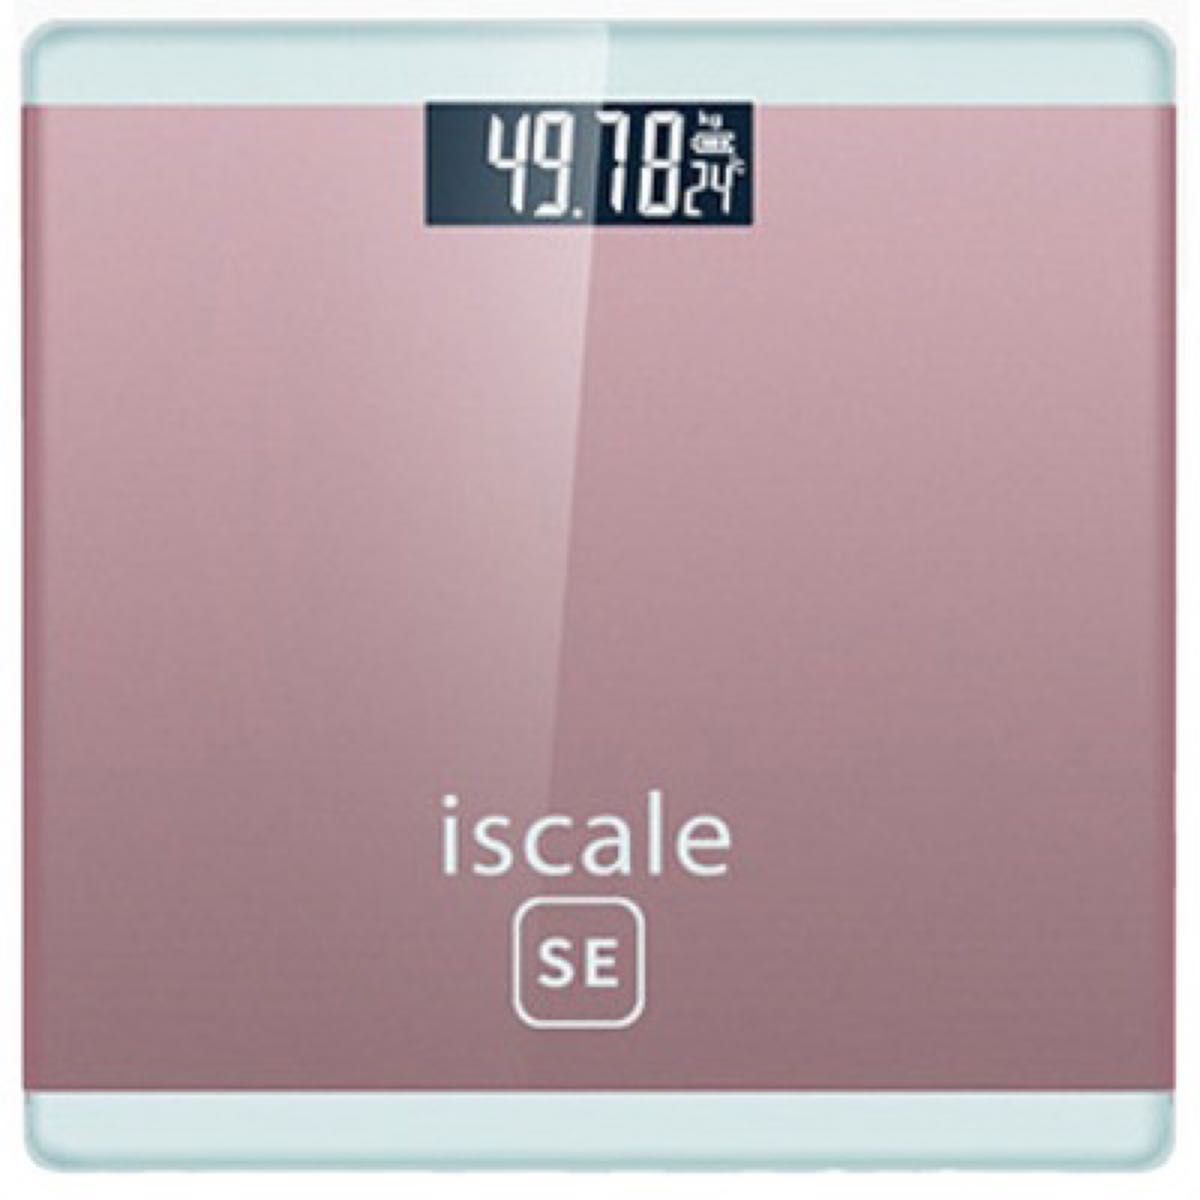 体重計 デジタル 薄型 ヘルスメーター シンプル 見やすい 強化ガラス ピンク